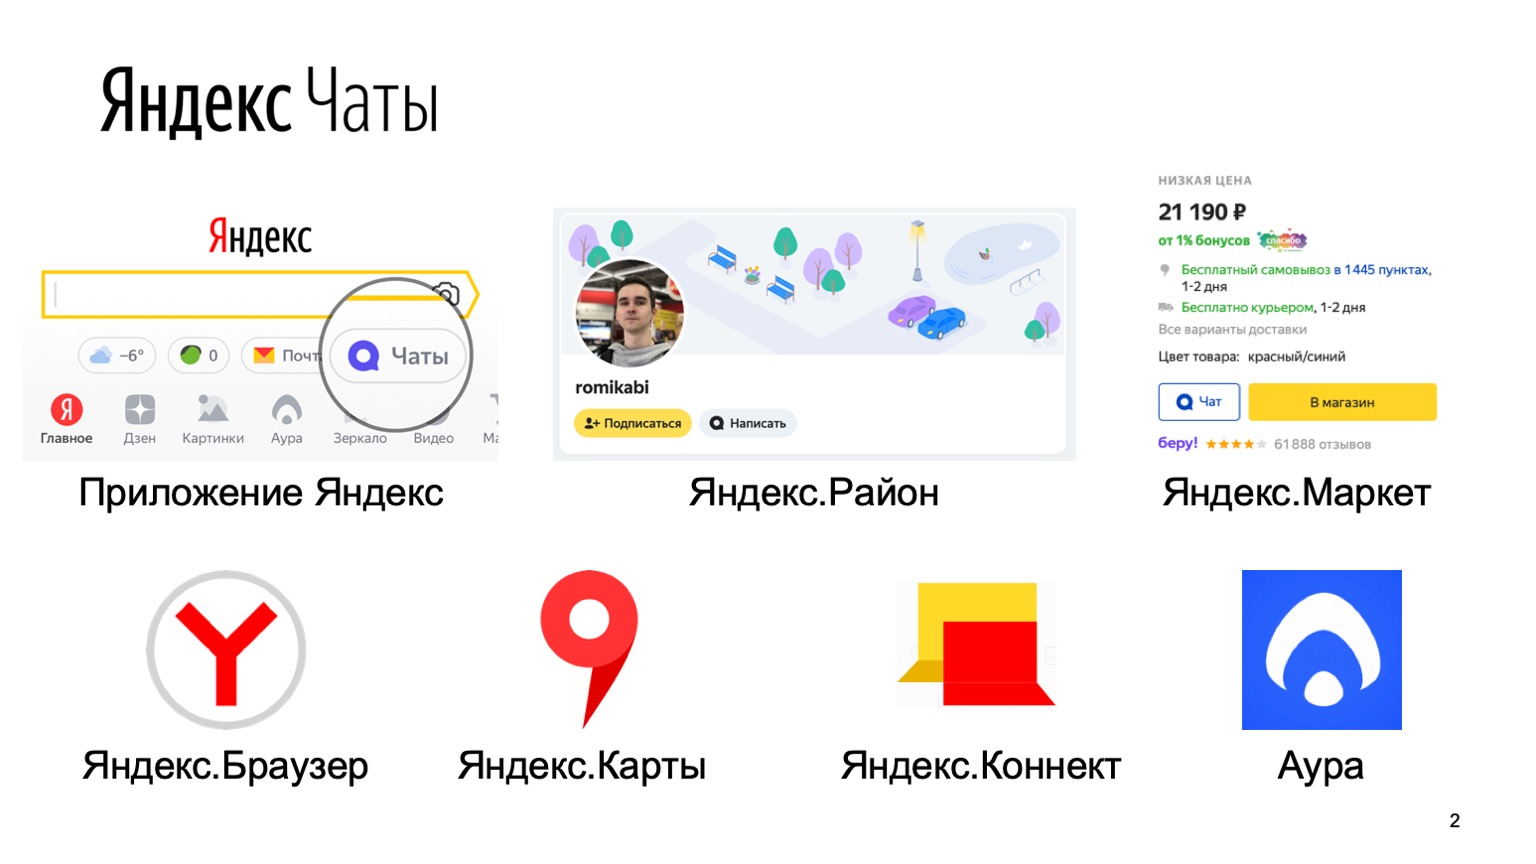 Мобильная разработка — это просто и скучно? Доклад Яндекса - 2